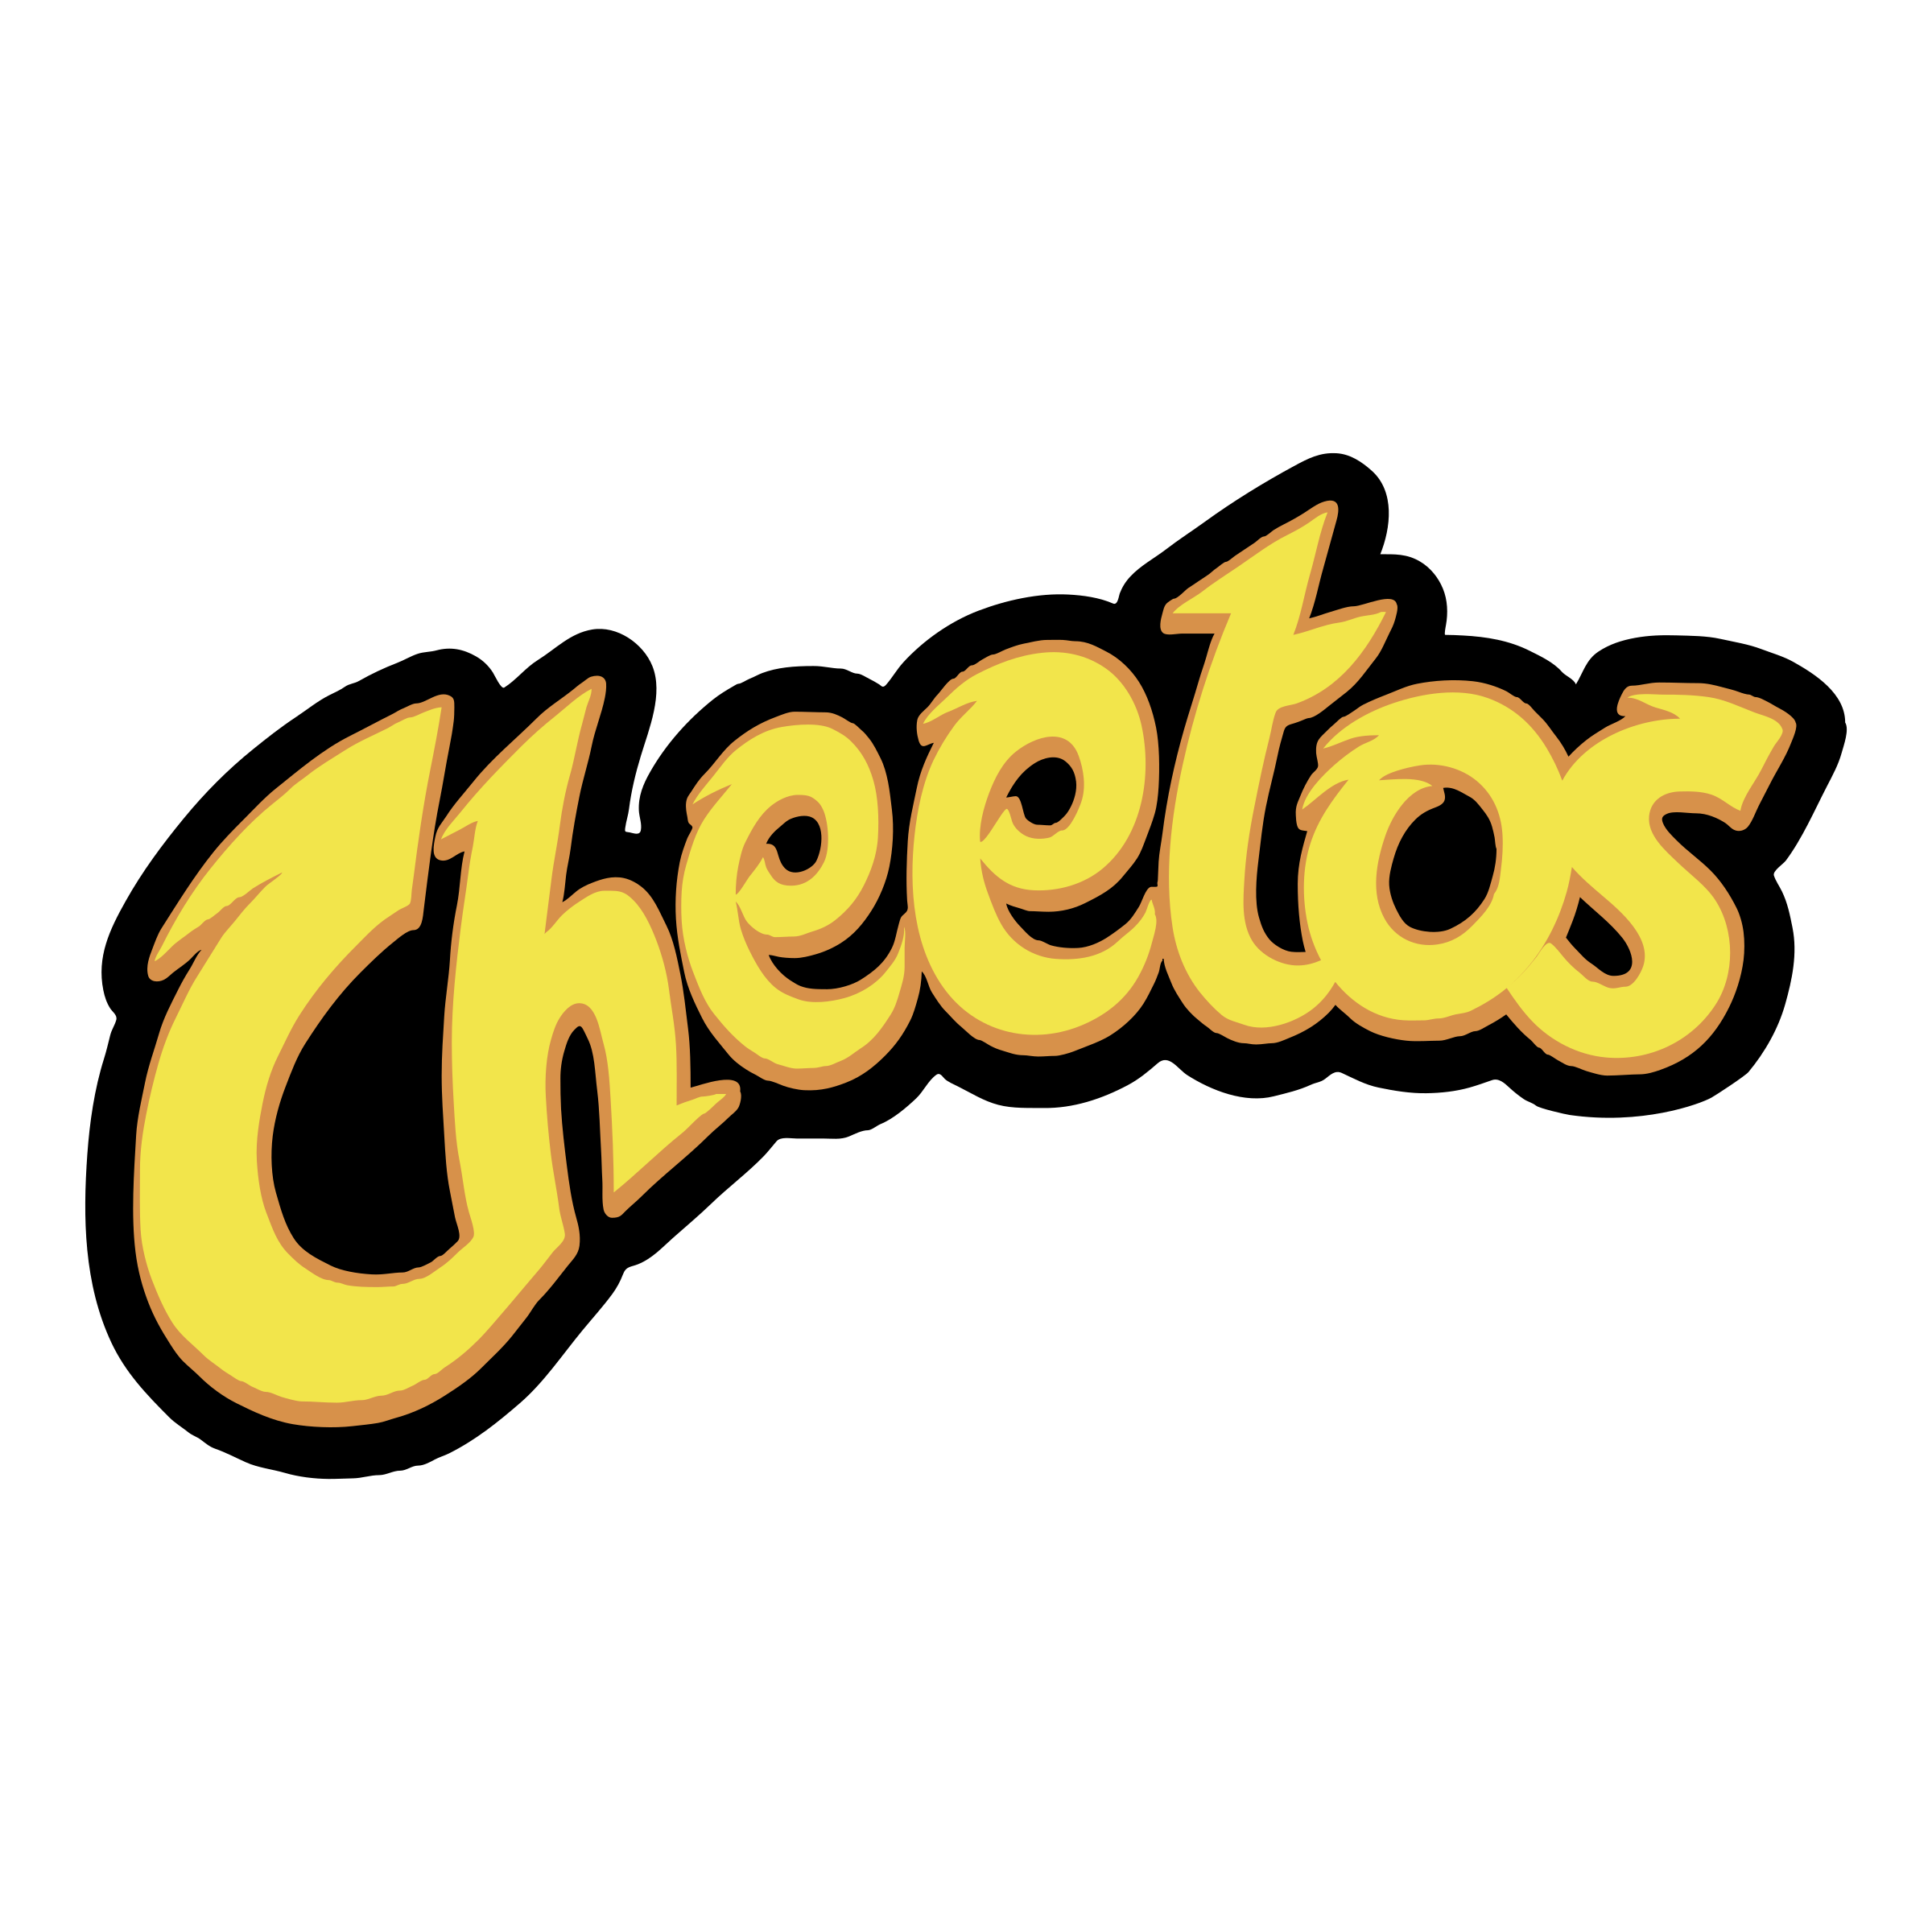 Cheetos Logo - Cheetos Logo PNG Transparent & SVG Vector